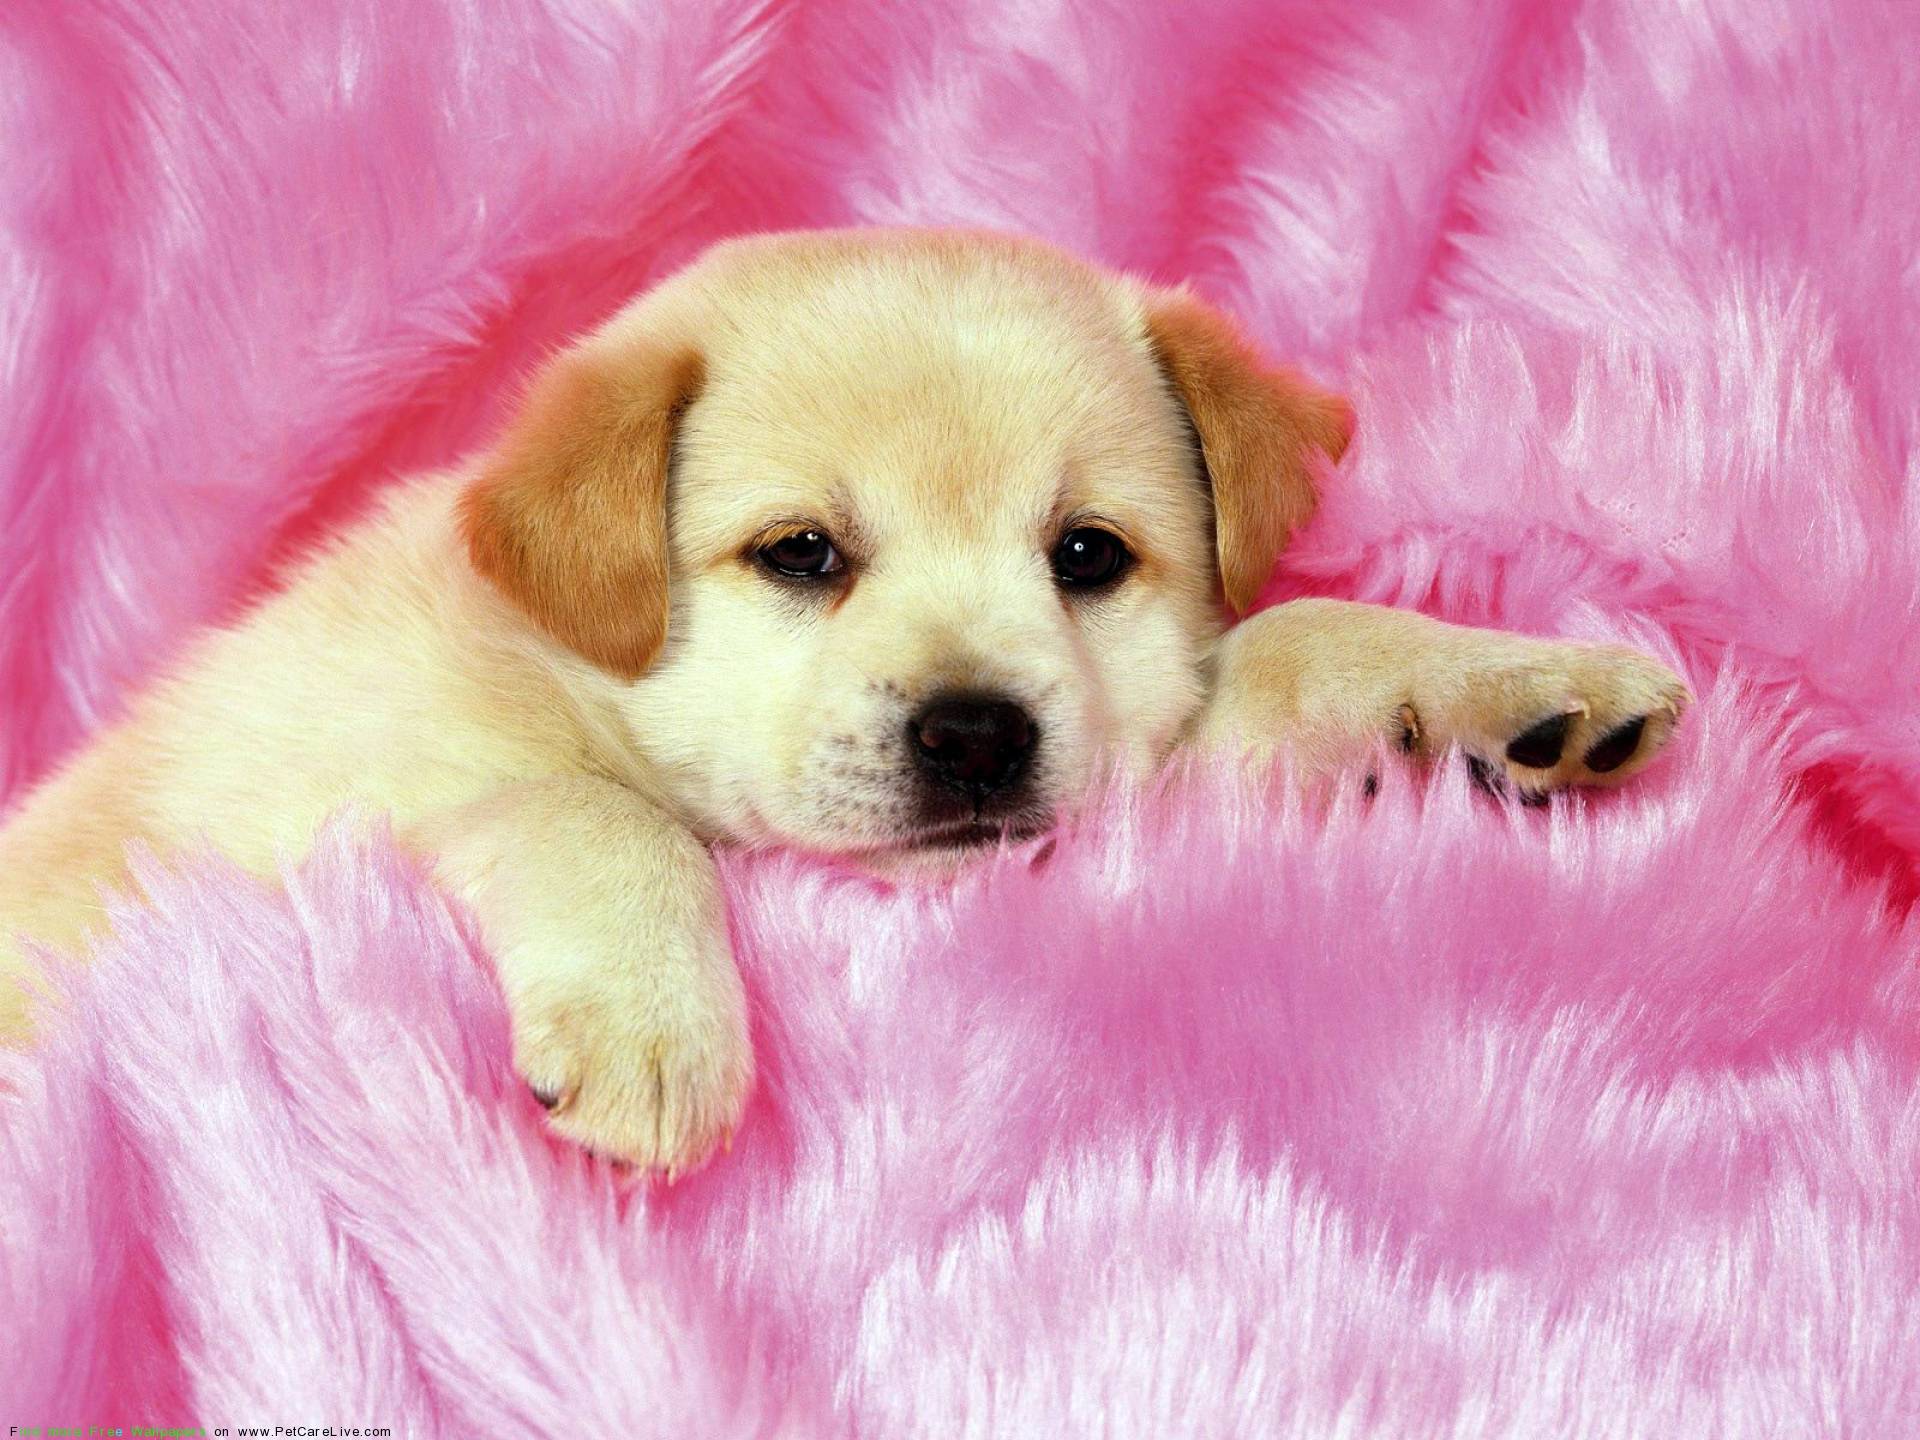 Puppy Wallpaper. Cute Puppy Wallpaper, Puppy Wallpaper and Puppy Valentine Wallpaper